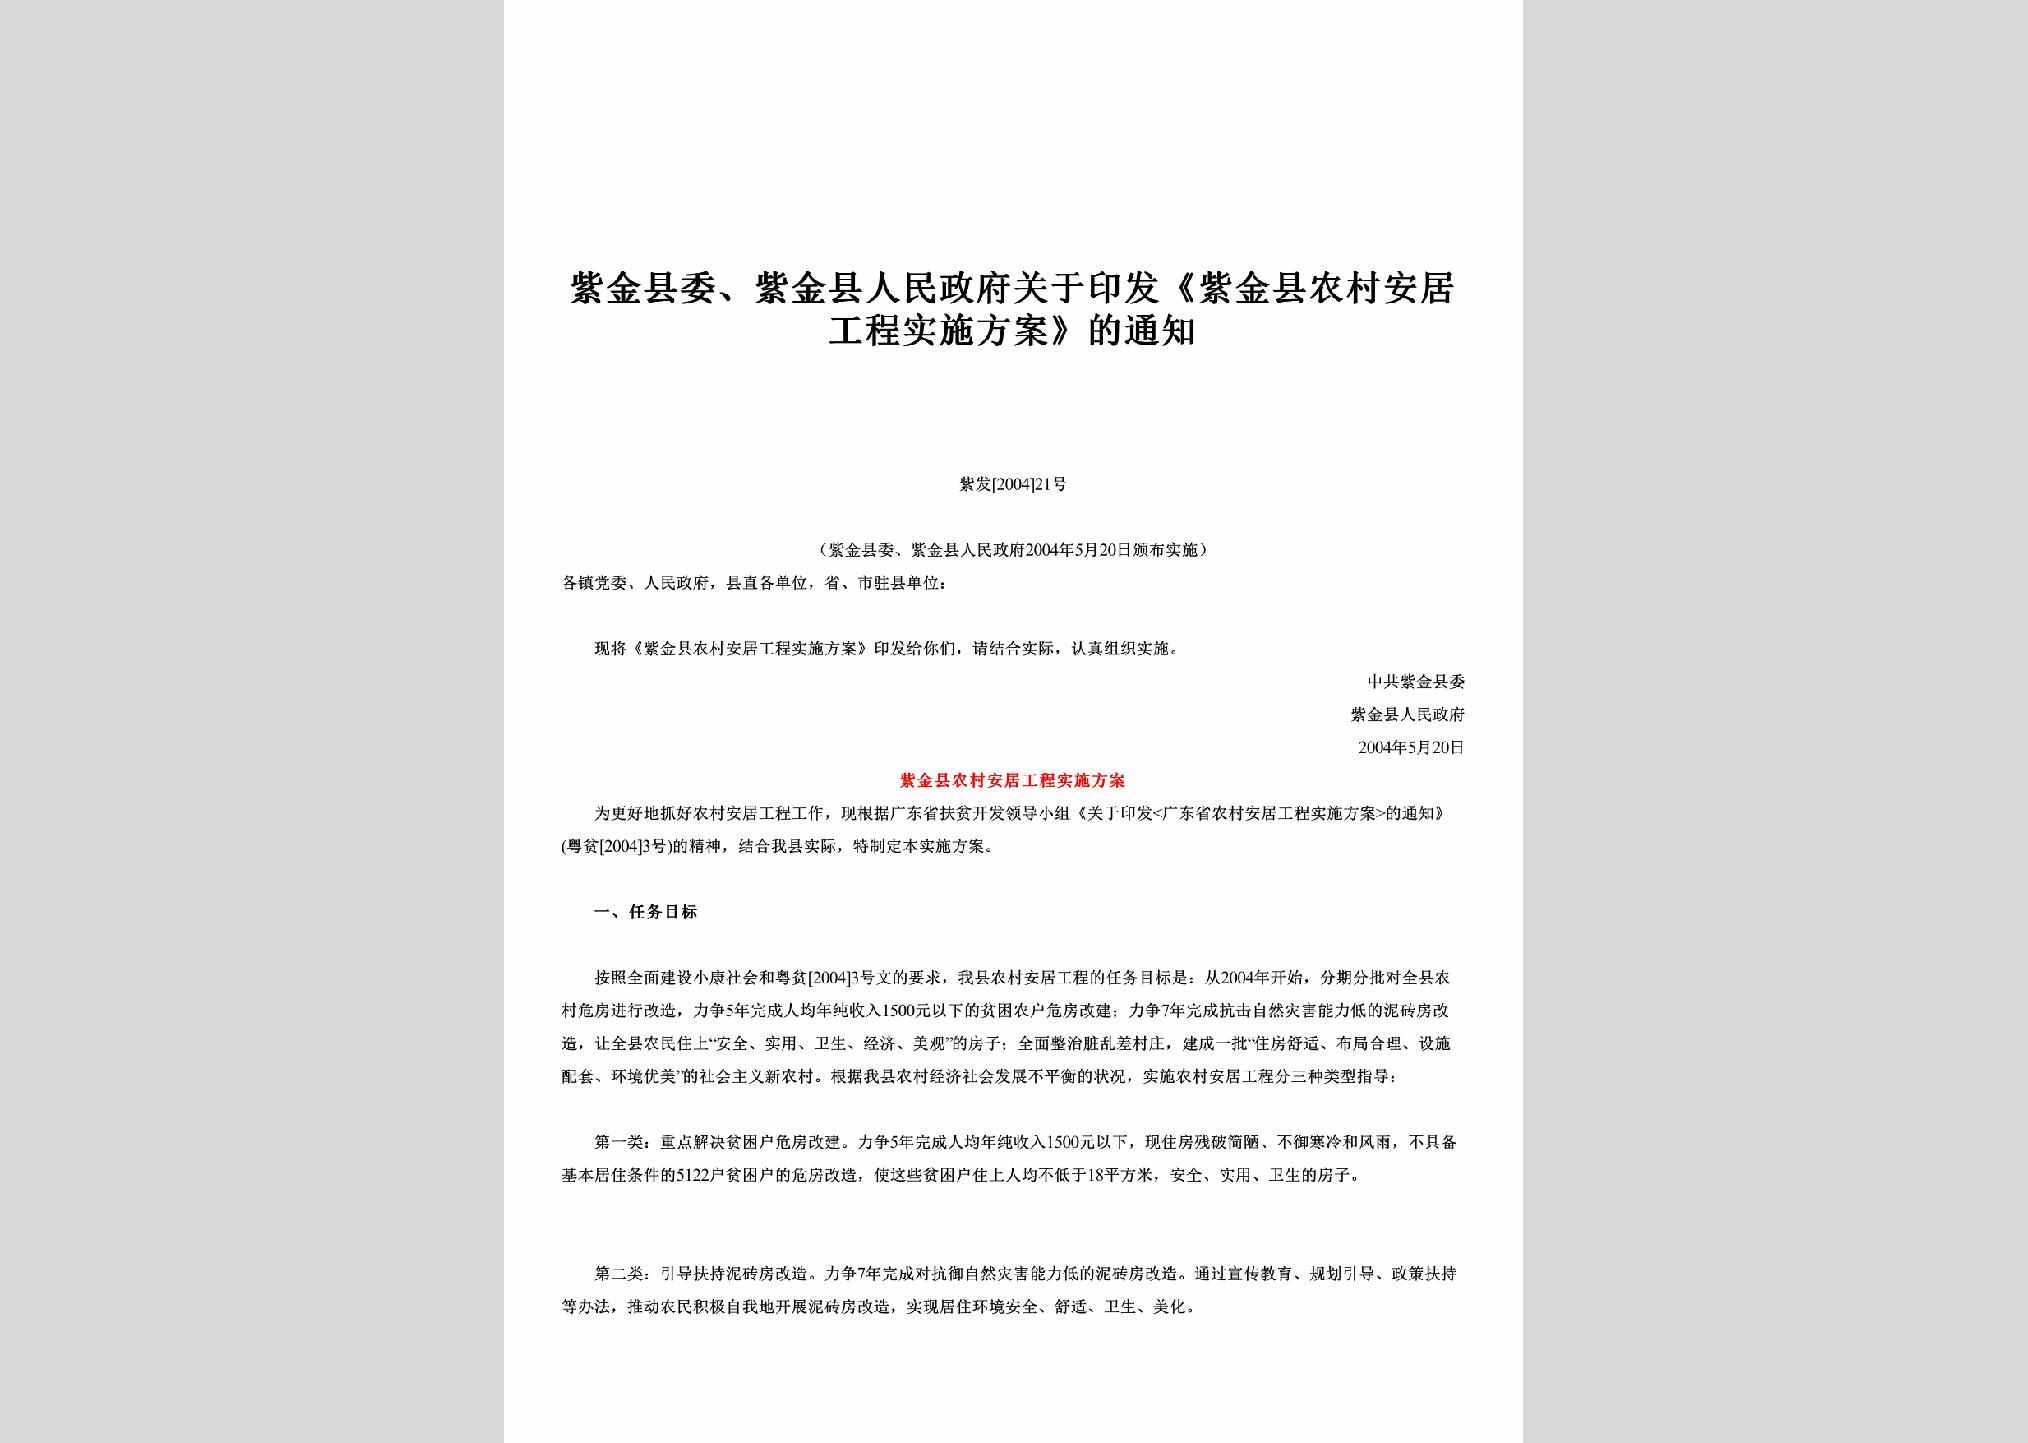 紫发[2004]21号：关于印发《紫金县农村安居工程实施方案》的通知